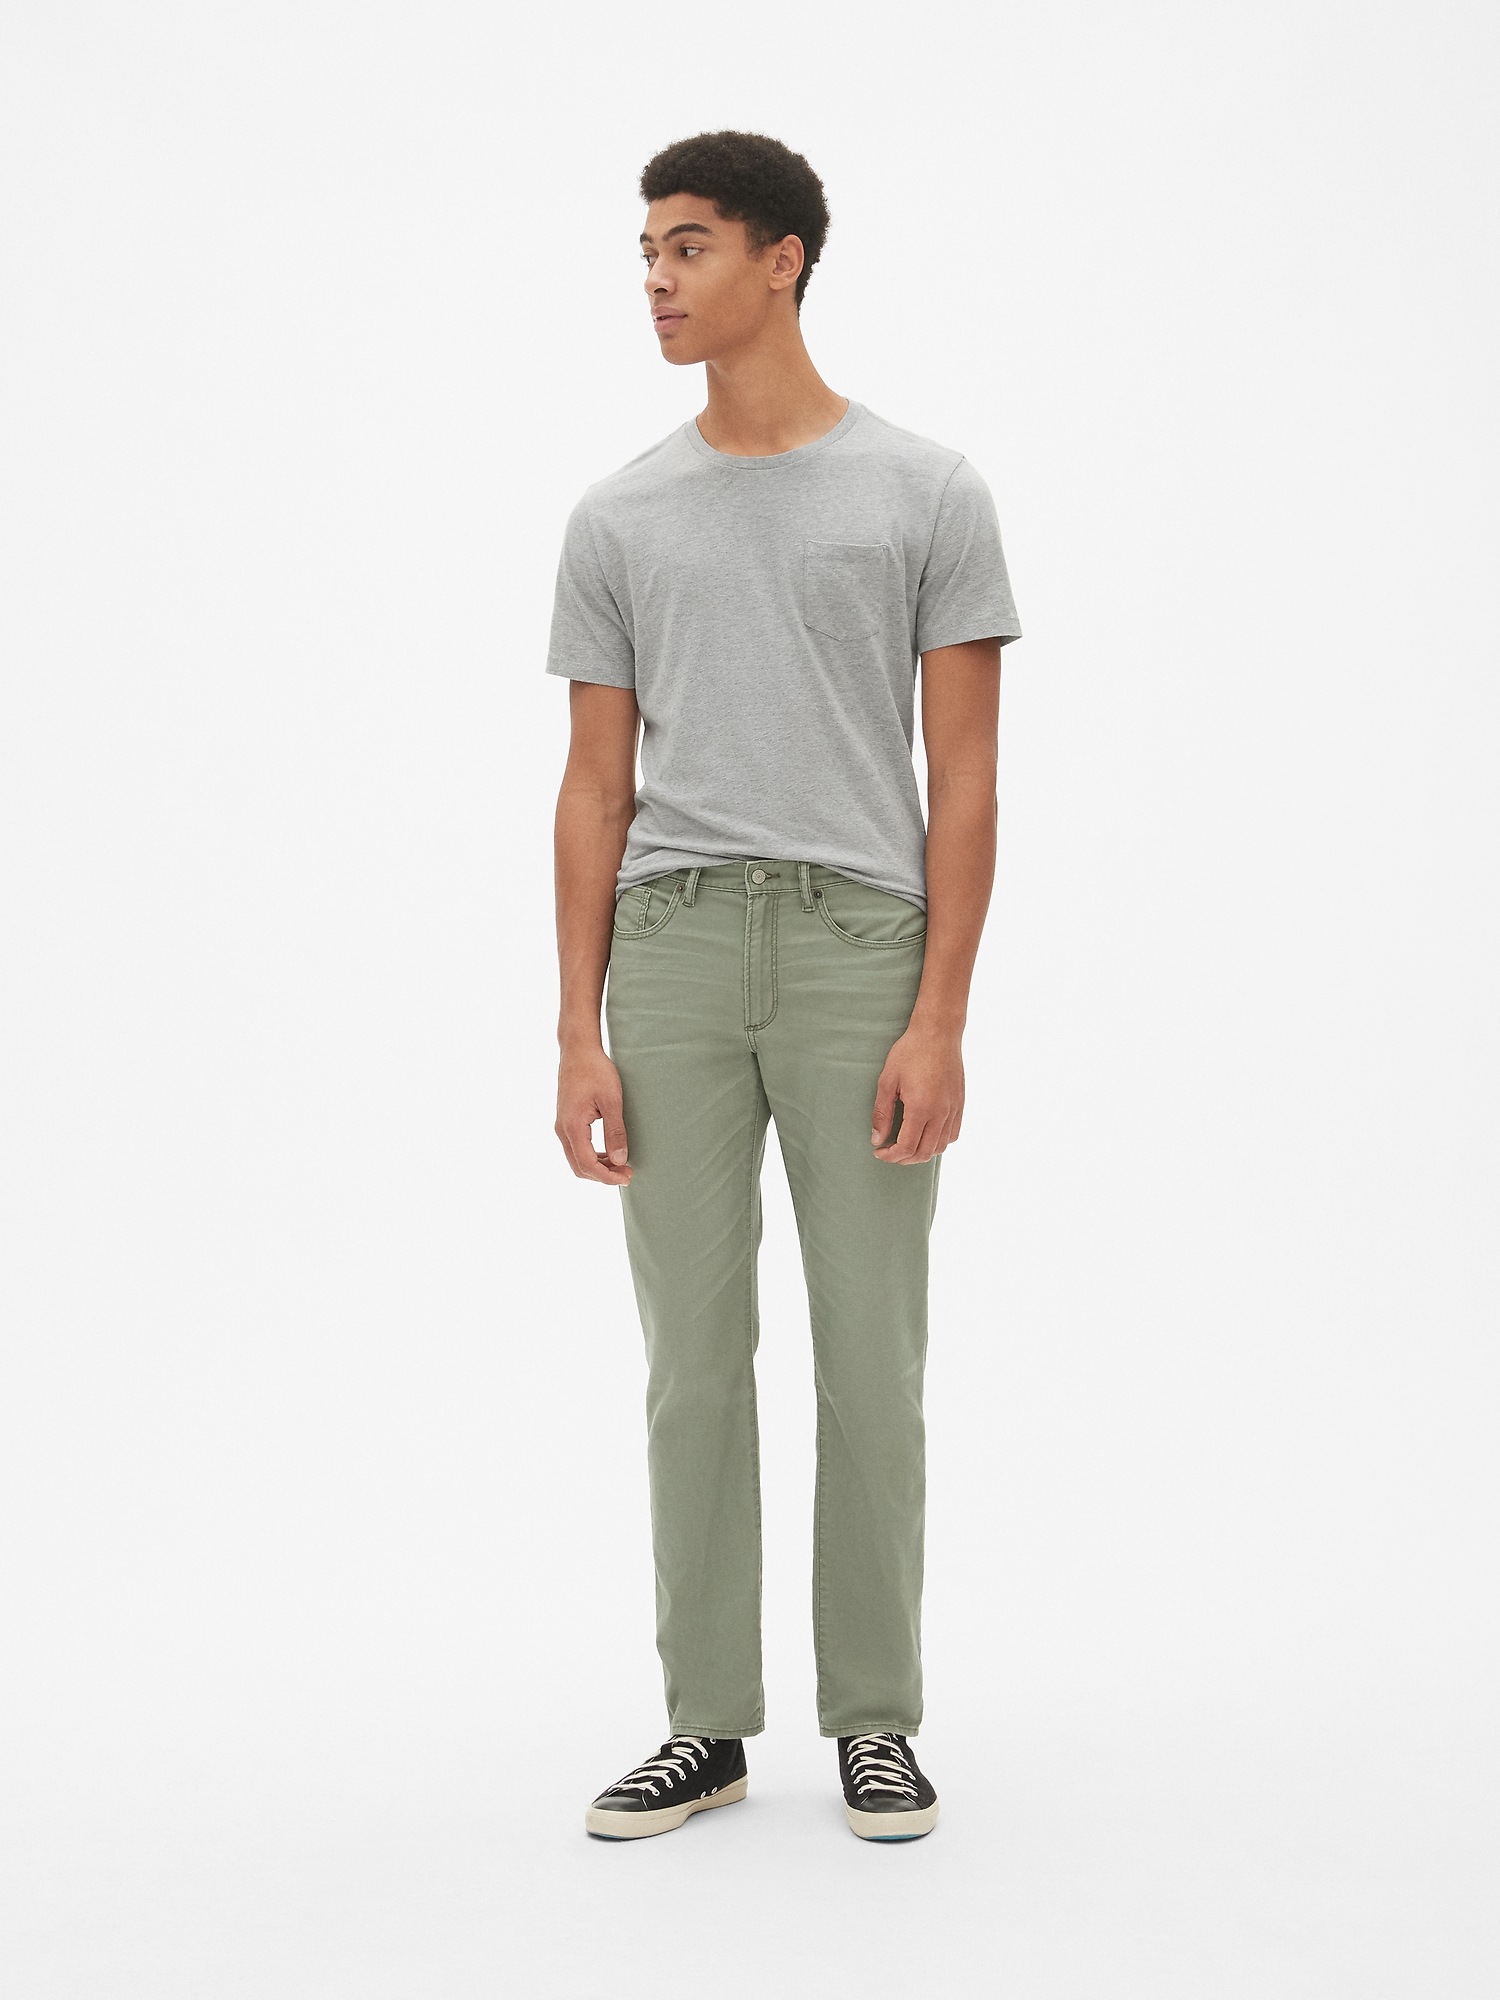 Gap Wearlight Slim Jeans With GapFlex Size 34 - AirRobe